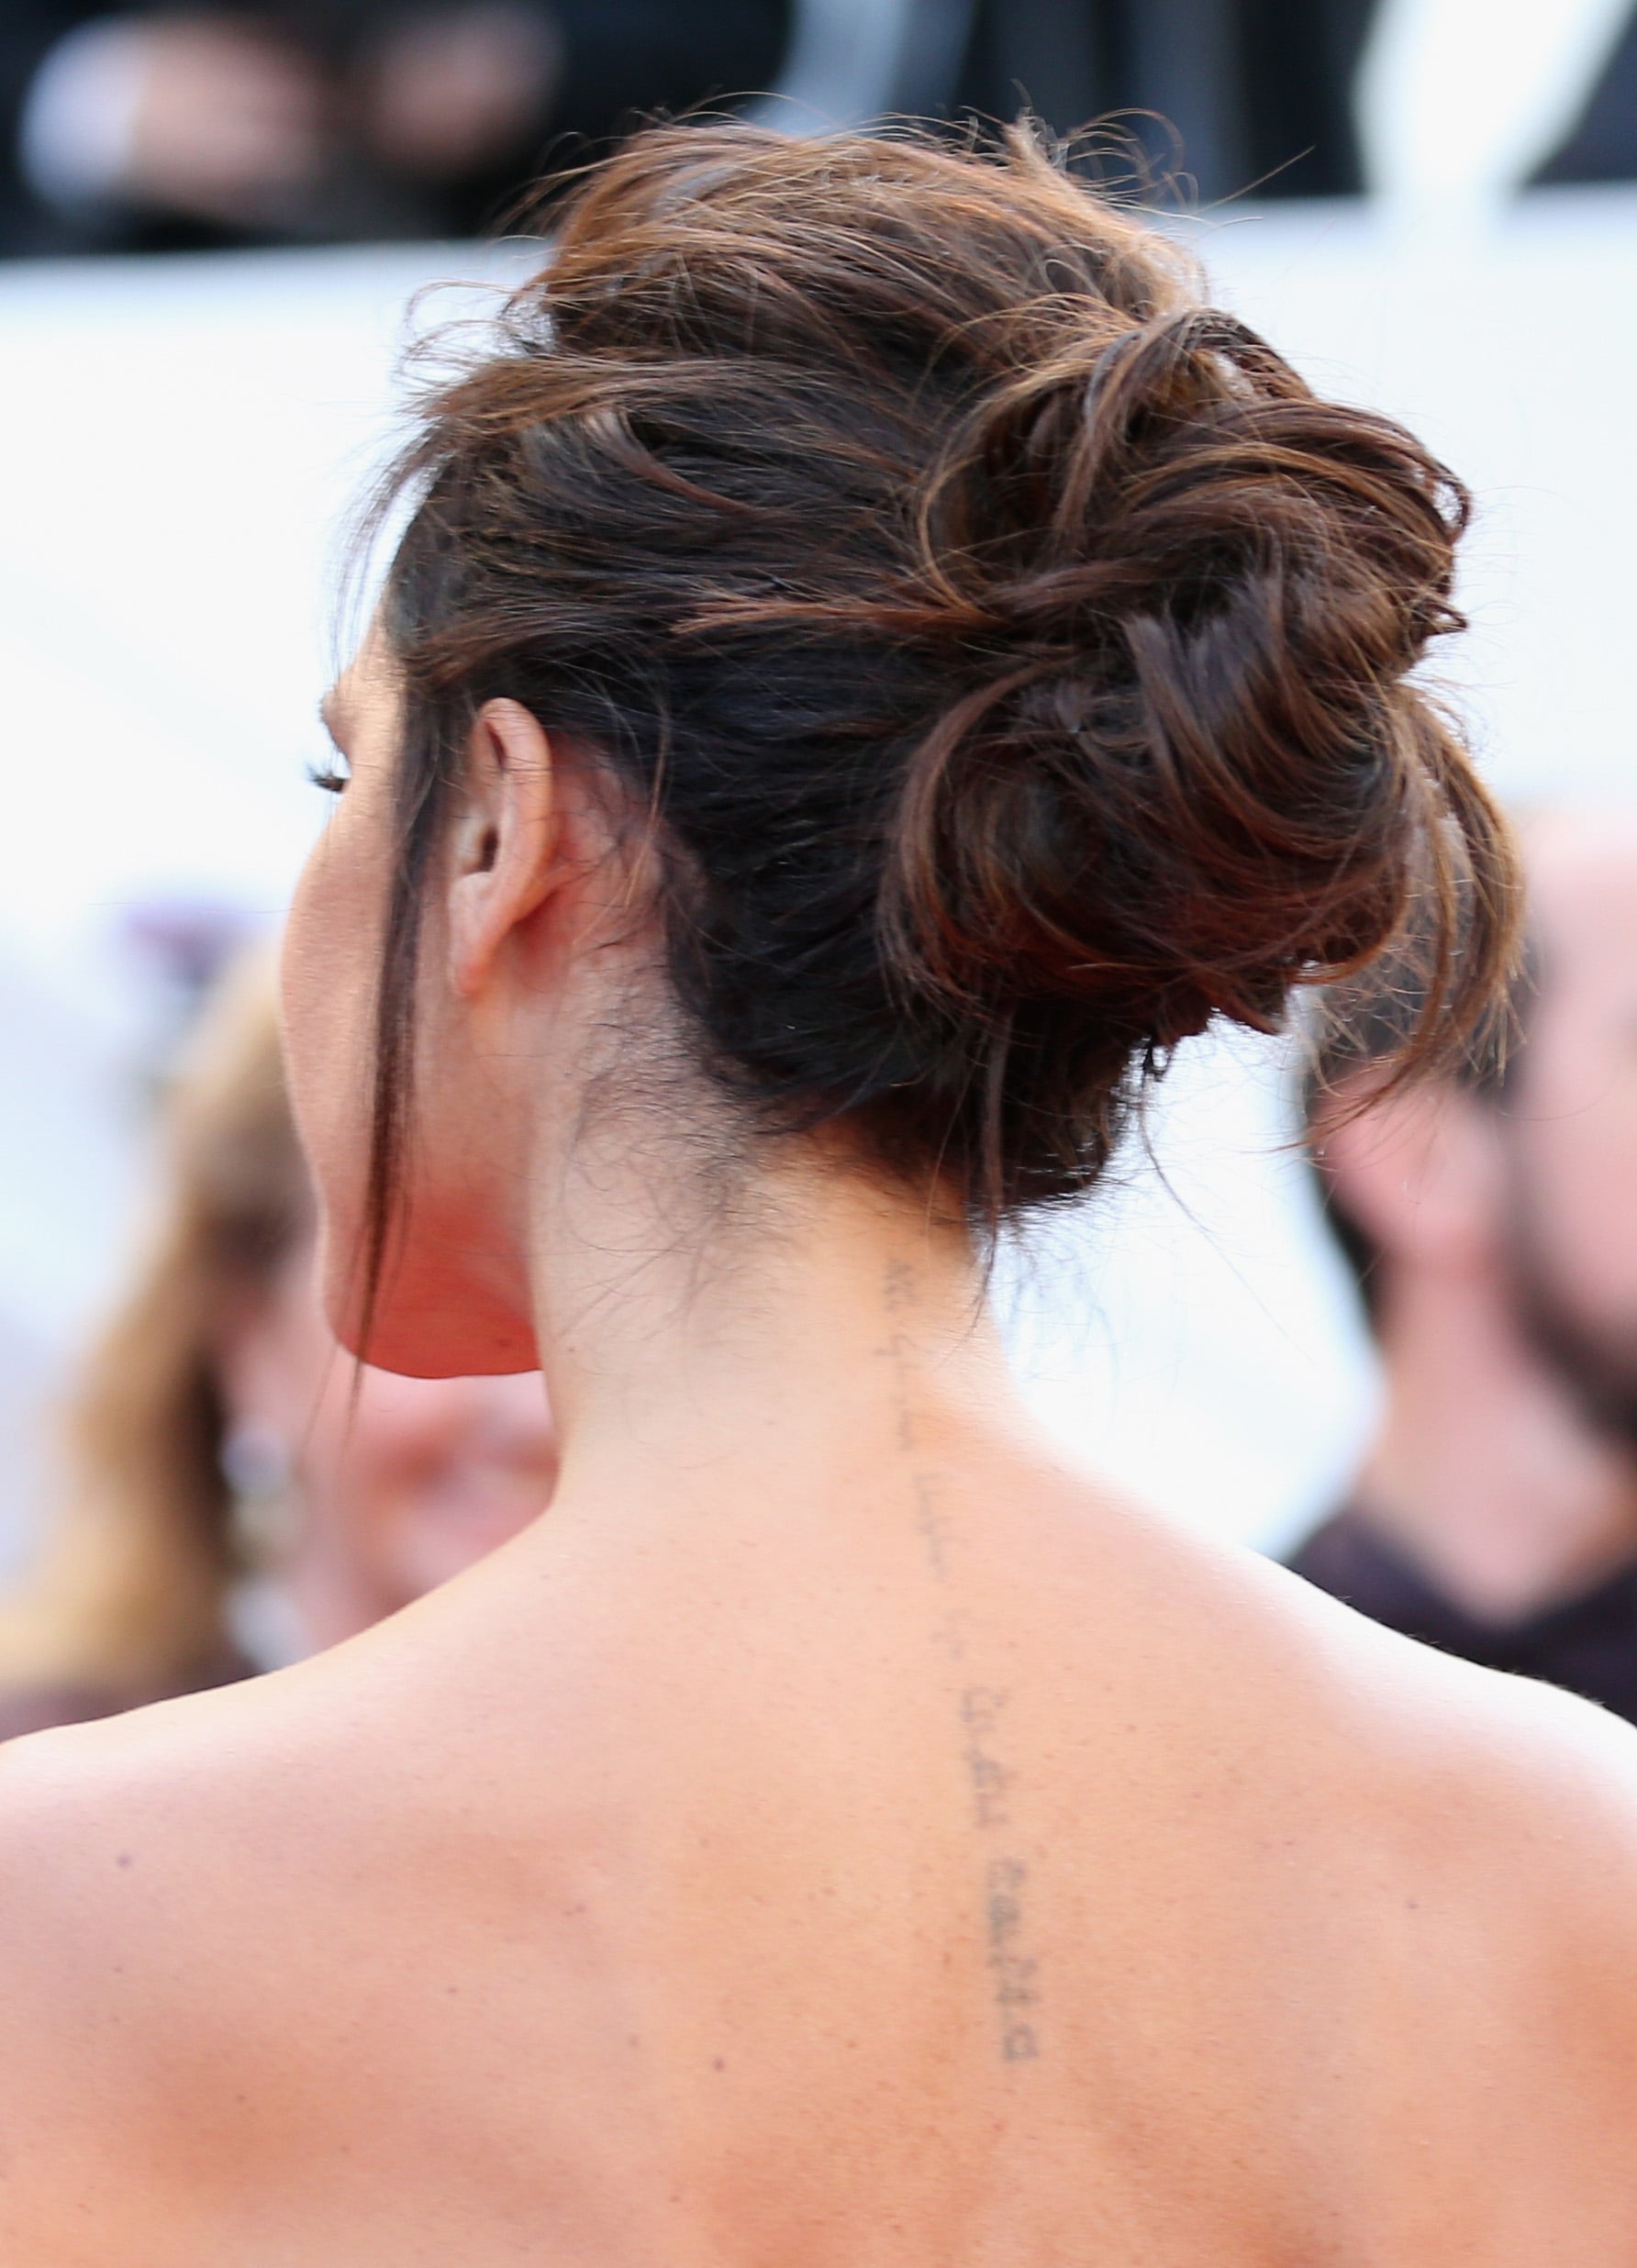 Victoria Beckham has given her husband David Beckham a tattoo voucher |  HELLO!